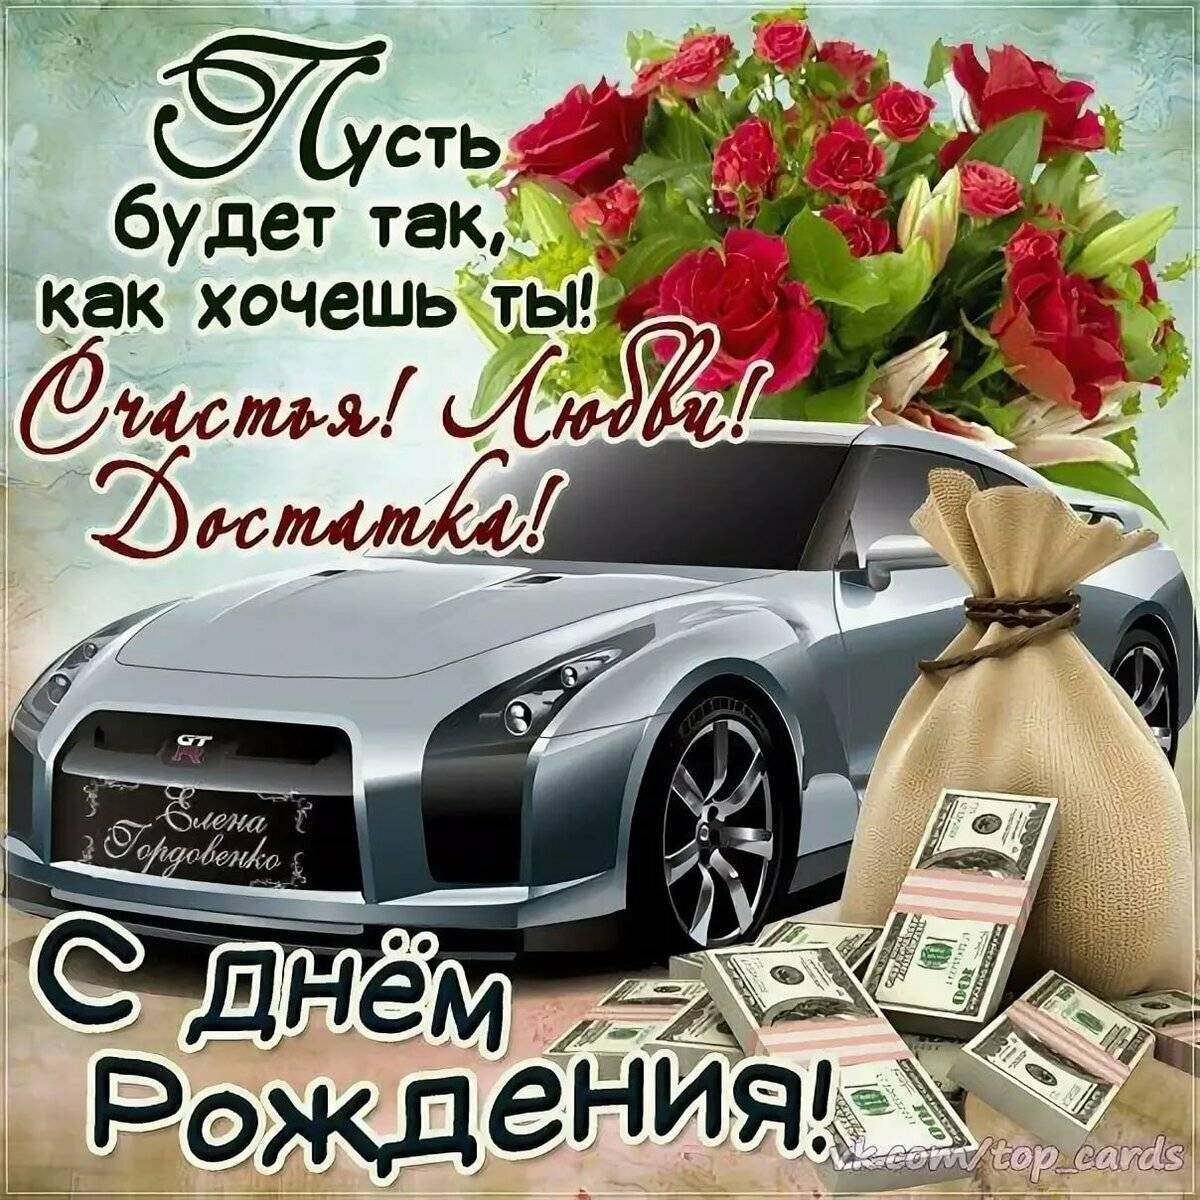 Поздравления с днем рождения подруге | ВКонтакте